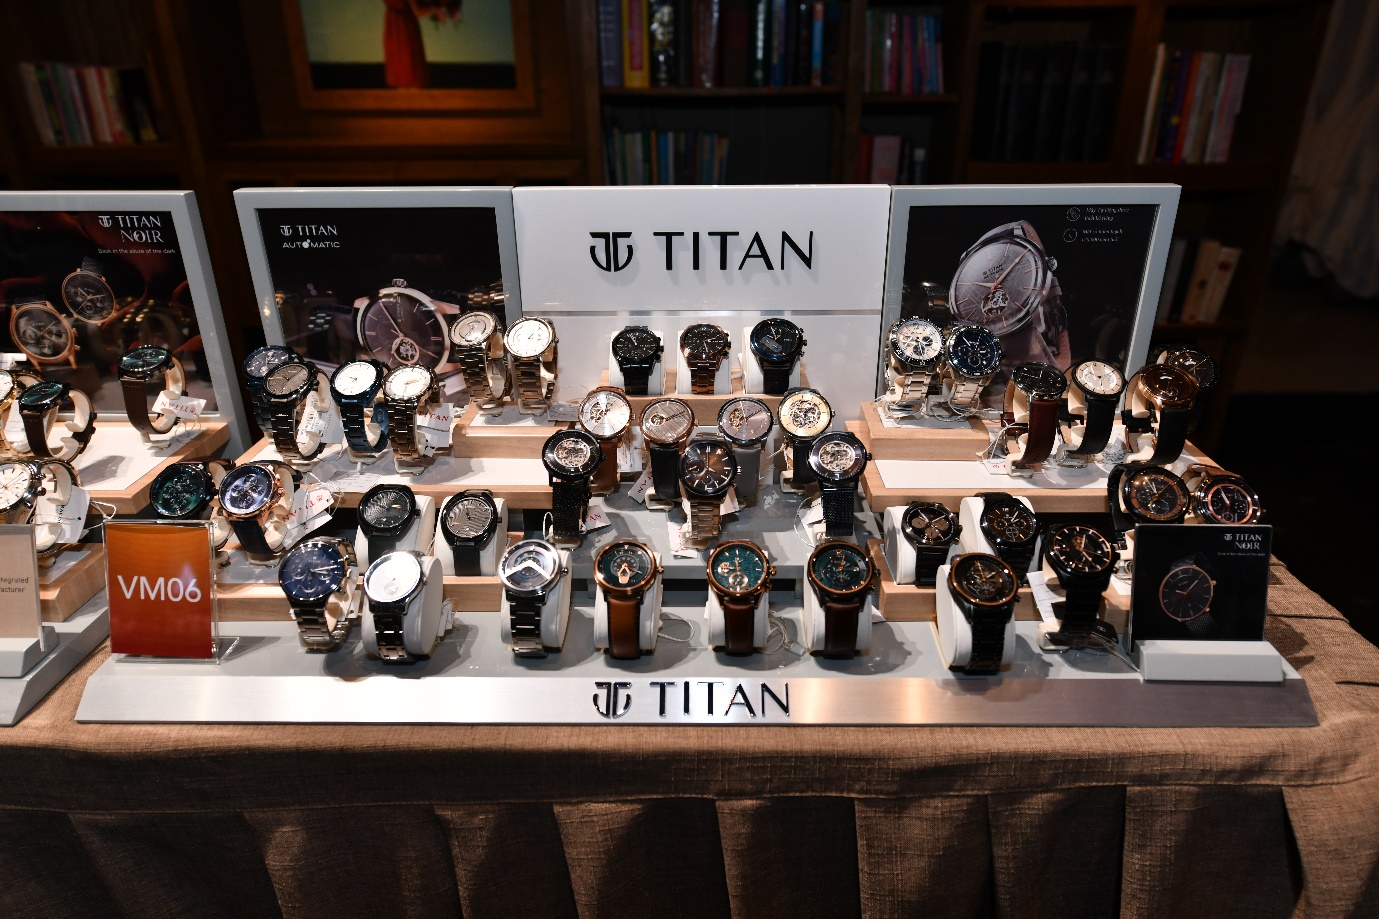 Hội nghị "3T": Together - Towards - Tomorrow đánh dấu một kỷ nguyên mới của thương hiệu Titan tại Việt Nam - 1